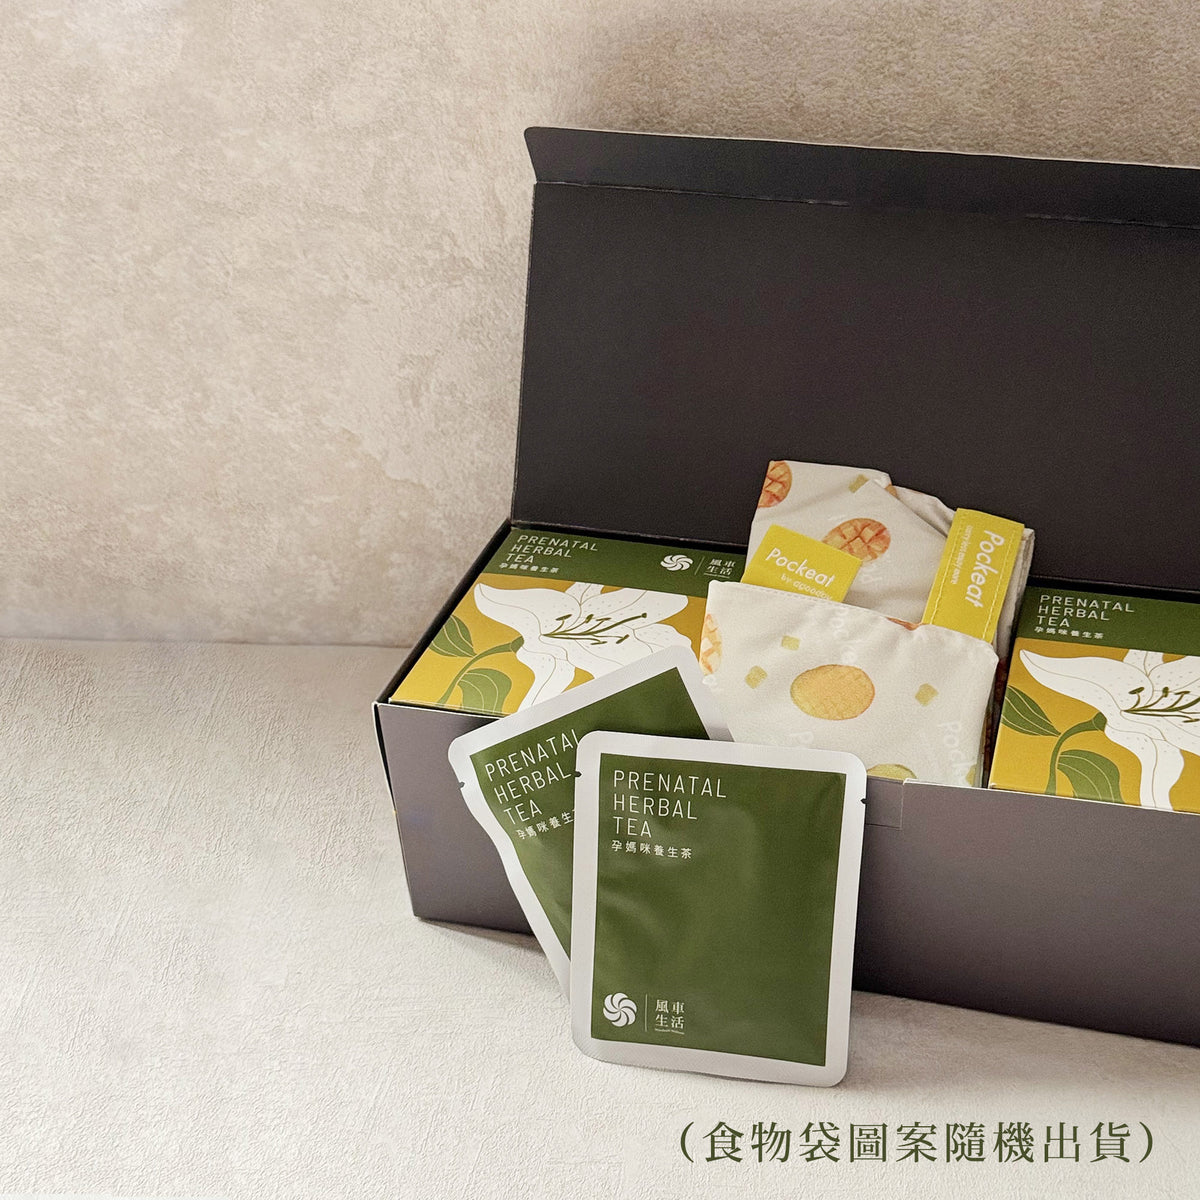 Prenatal Herbal Tea